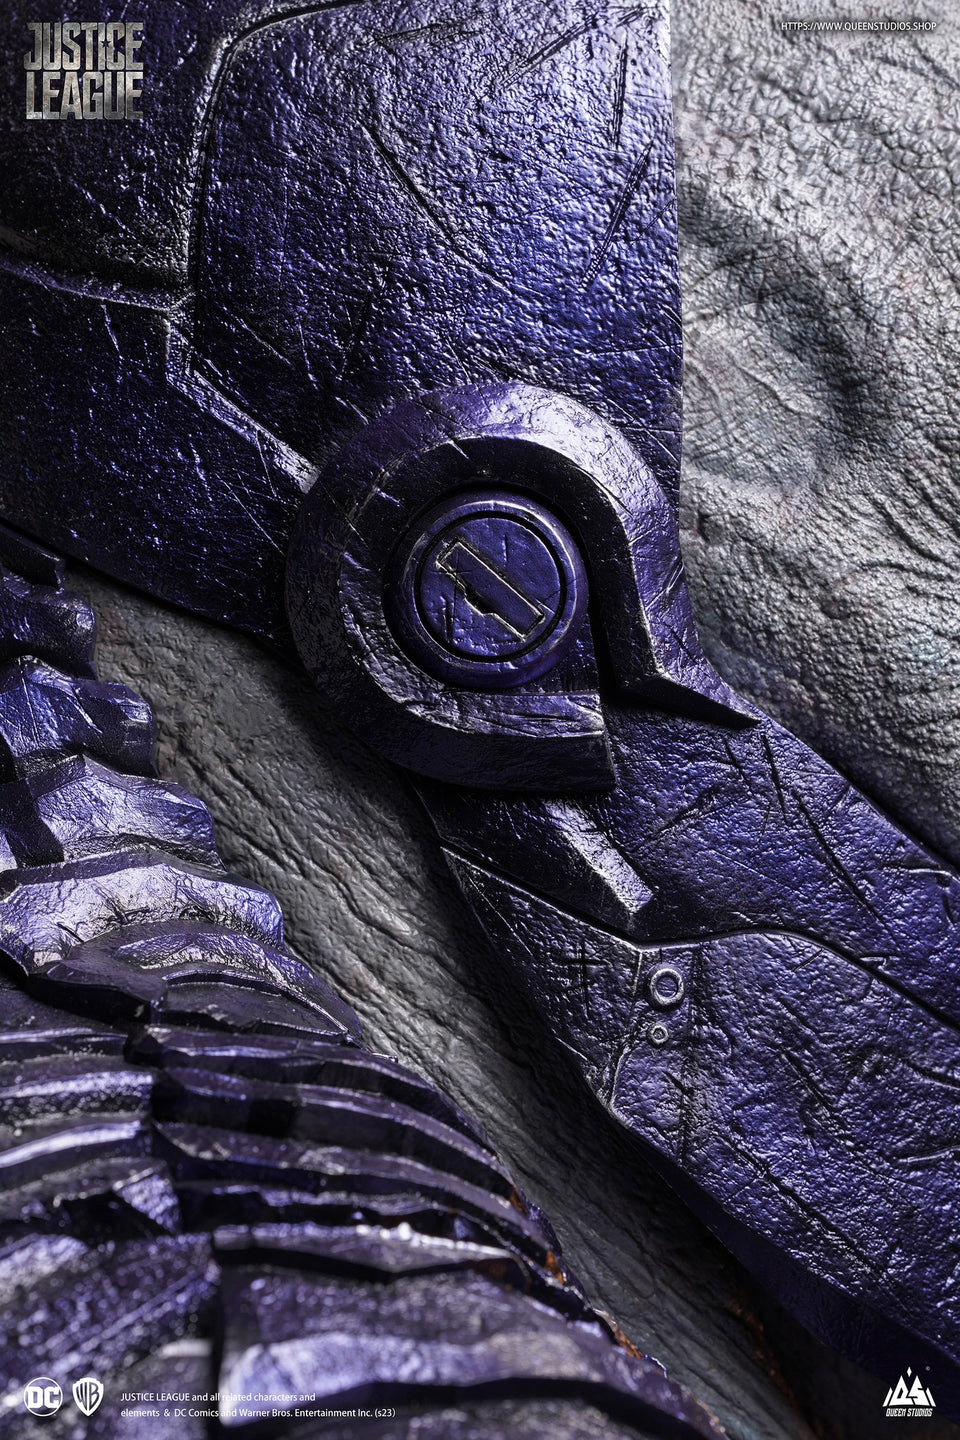 Queen Studios Darkseid Life-Size Bust 1/1 Scale Statue